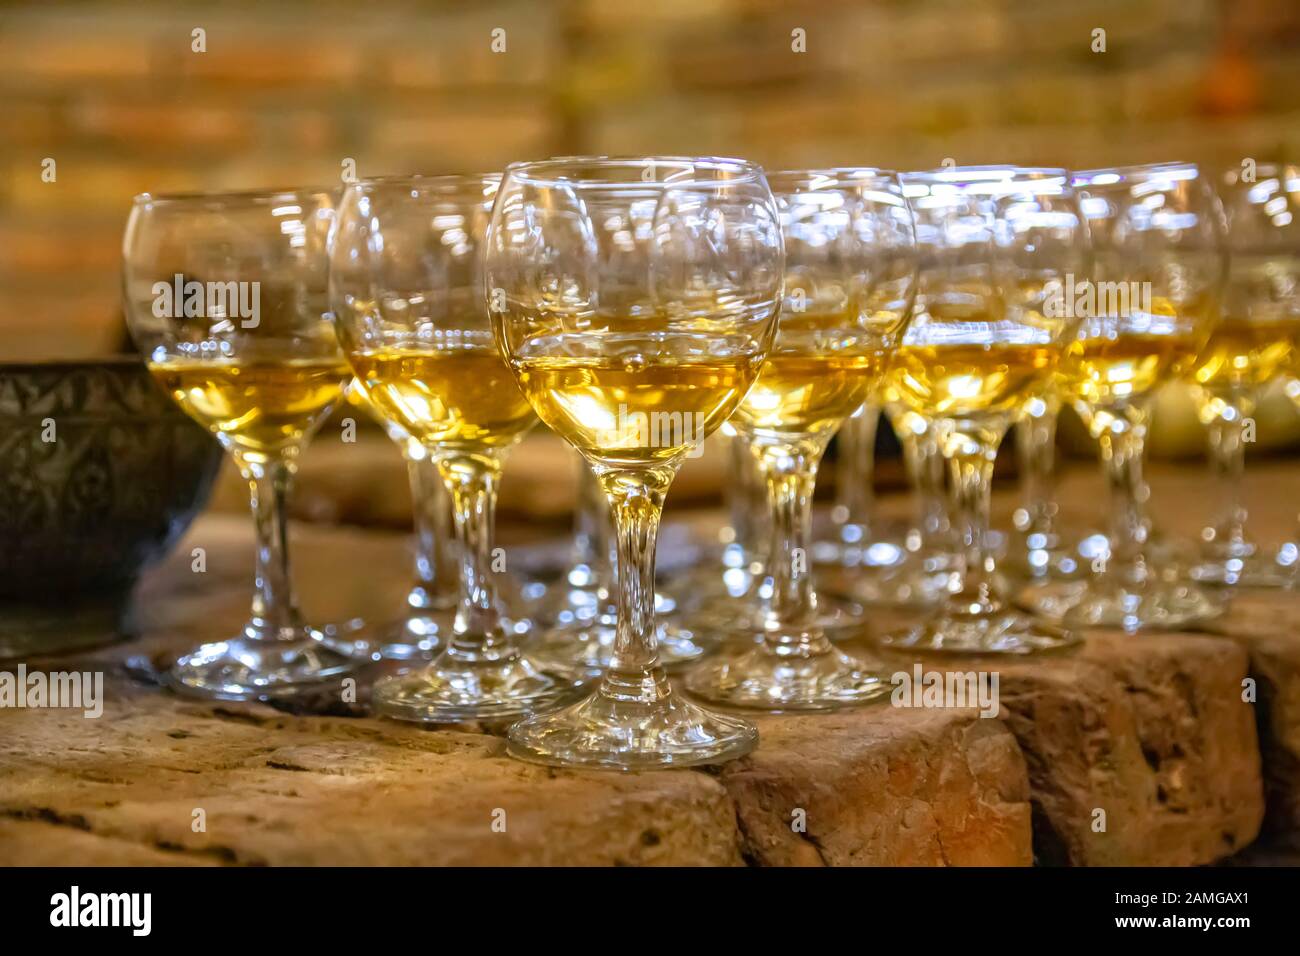 Rangées de gobelets en verre transparent pour vin rempli de vin d'ambre sur une surface en pierre Banque D'Images